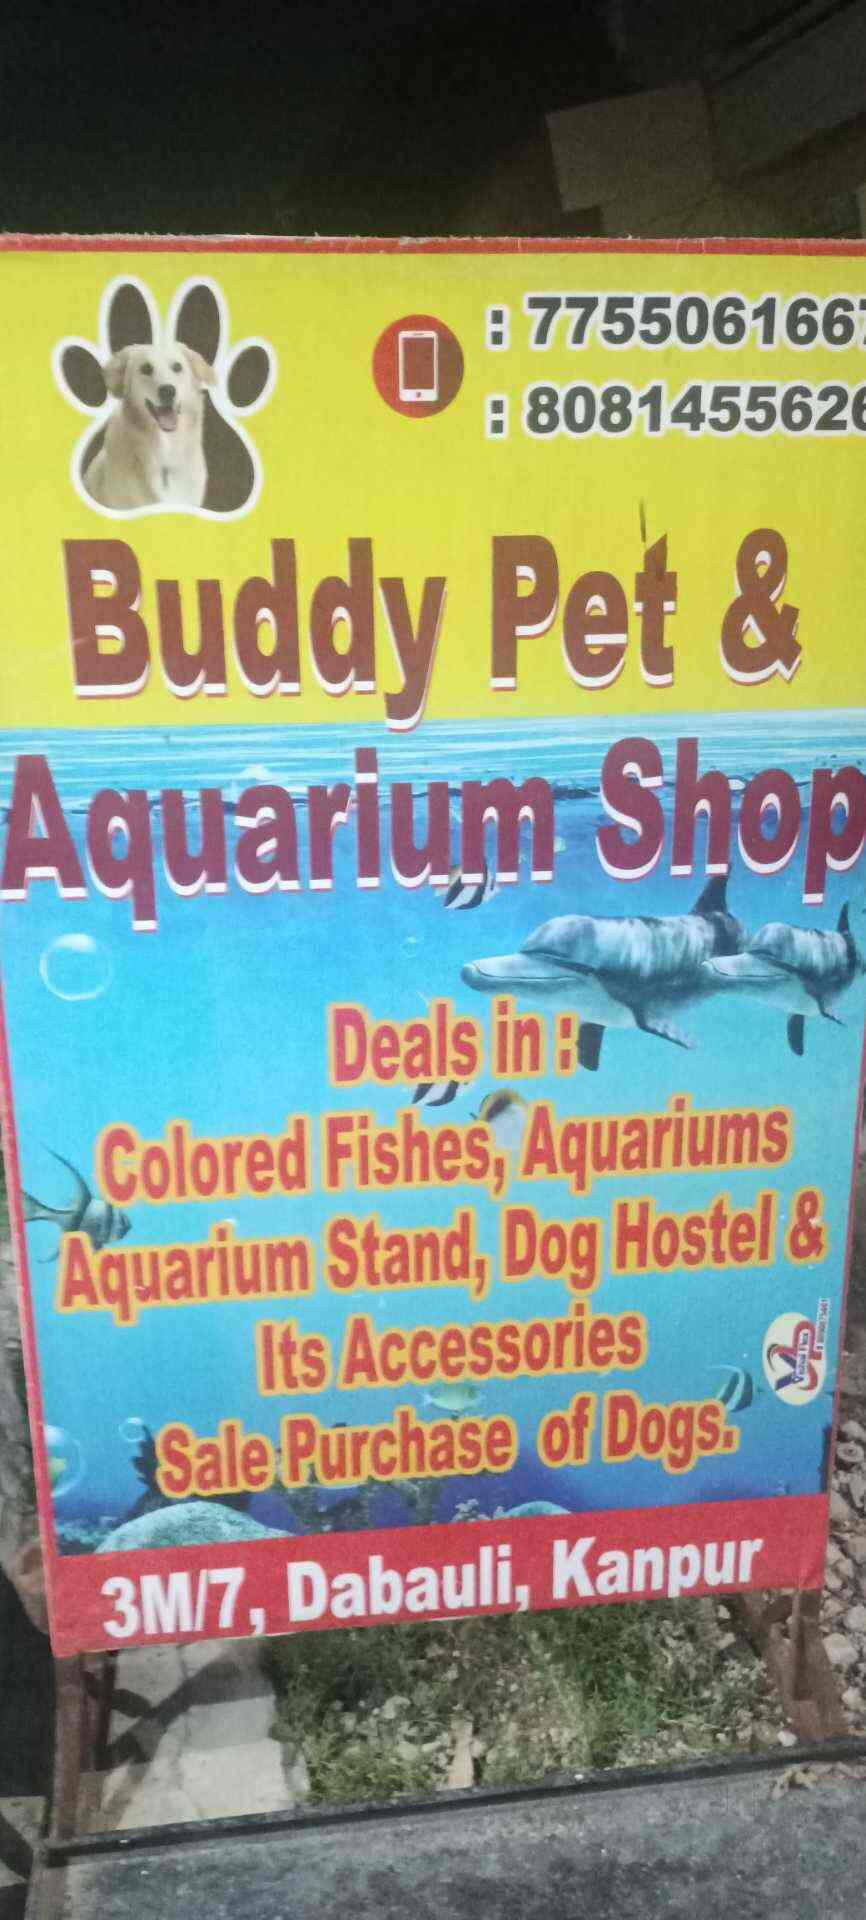 Buddy Pet & Aquarium Shop